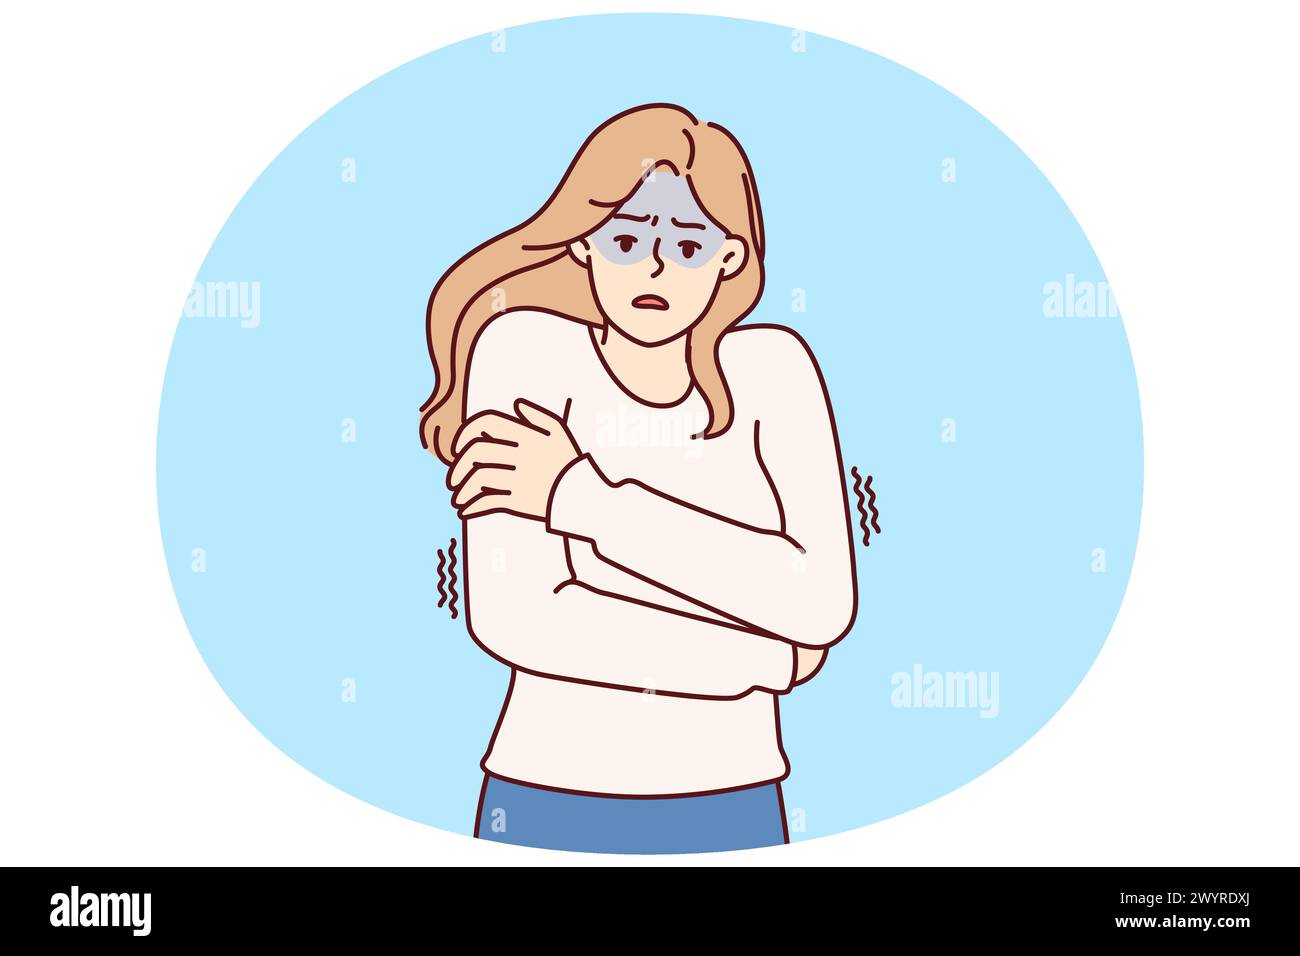 Une femme qui gèle les épaules en train d'essayer de garder au chaud et de ressentir des frissons après avoir contracté une infection grippale ou de la fièvre. Fille de glace dans le chandail rêve de la maison chaude d'attendre le temps froid Illustration de Vecteur